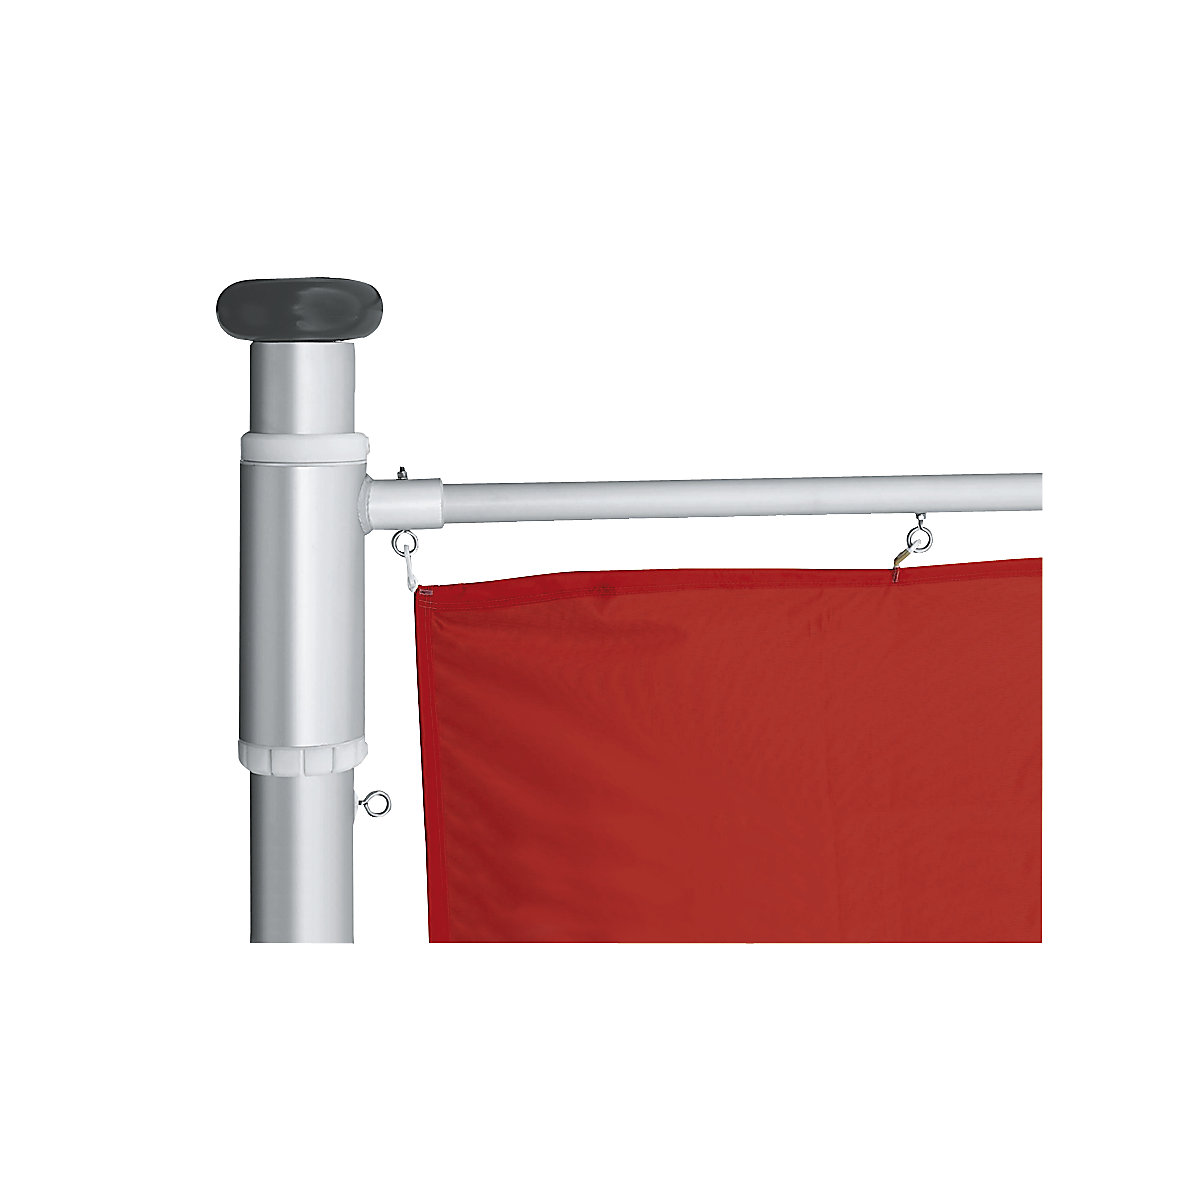 Mannus – Catarg din aluminiu pentru steaguri, PRESTIGE (Imagine produs 2)